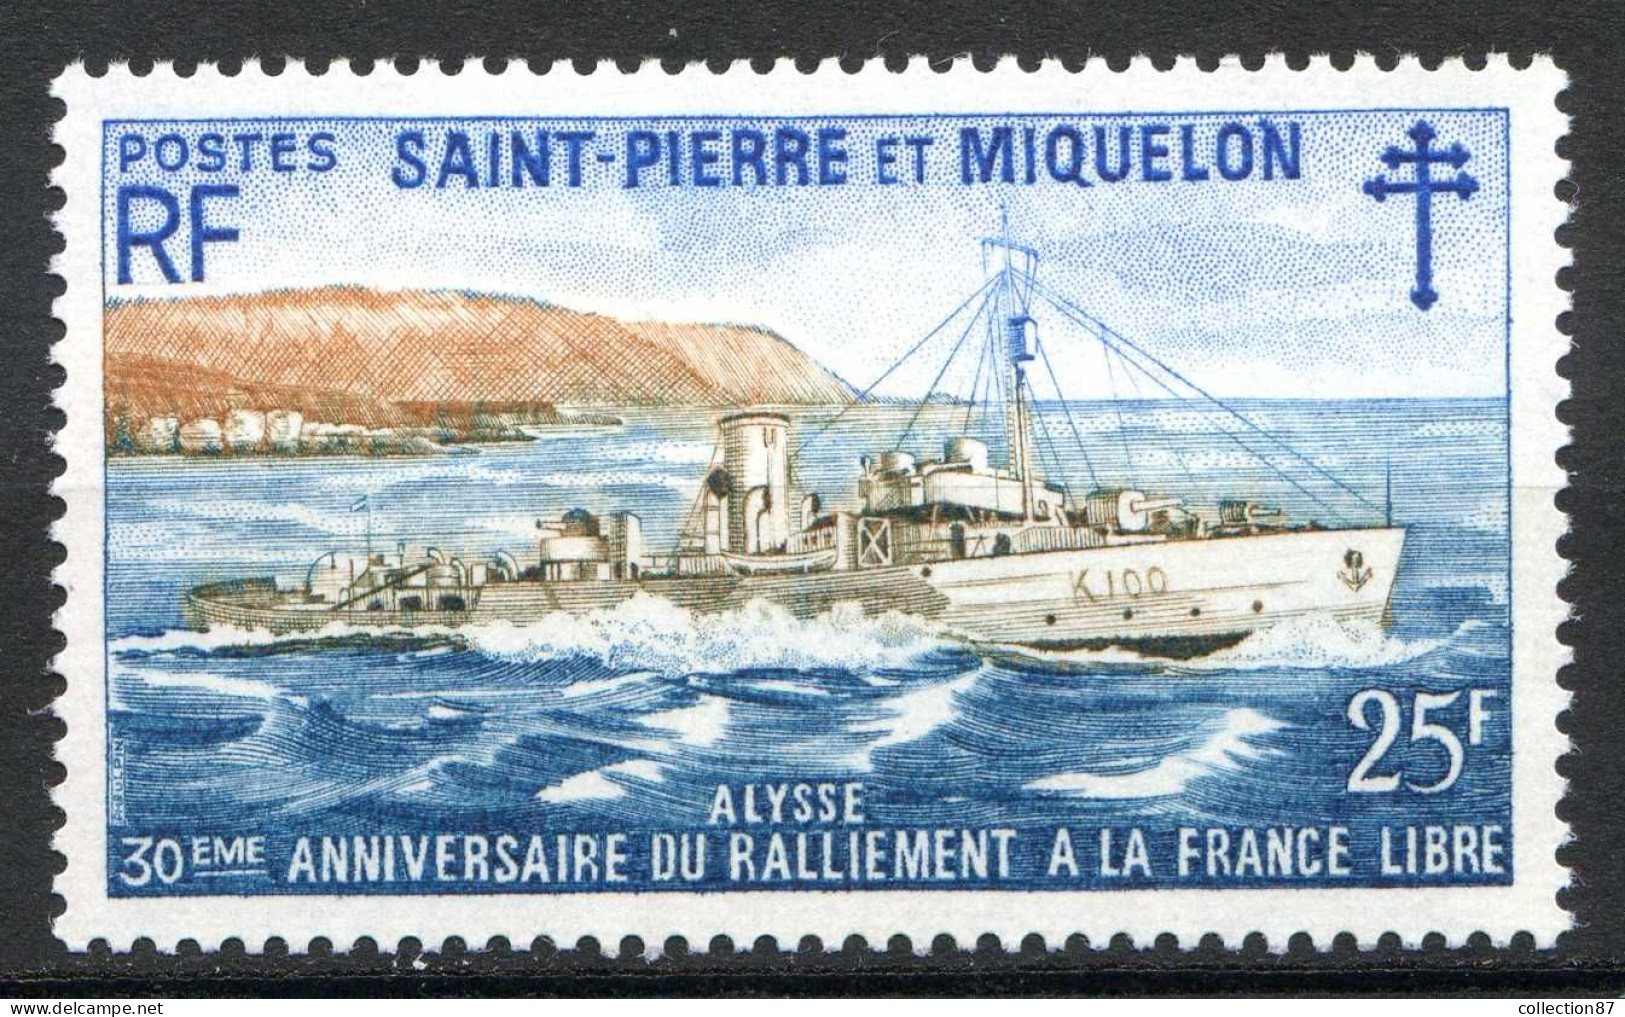 Réf 085 > SAINT PIERRE Et MIQUELON < N° 415 * < Neuf Ch -- MH * --- > Bateau Alysse - Unused Stamps